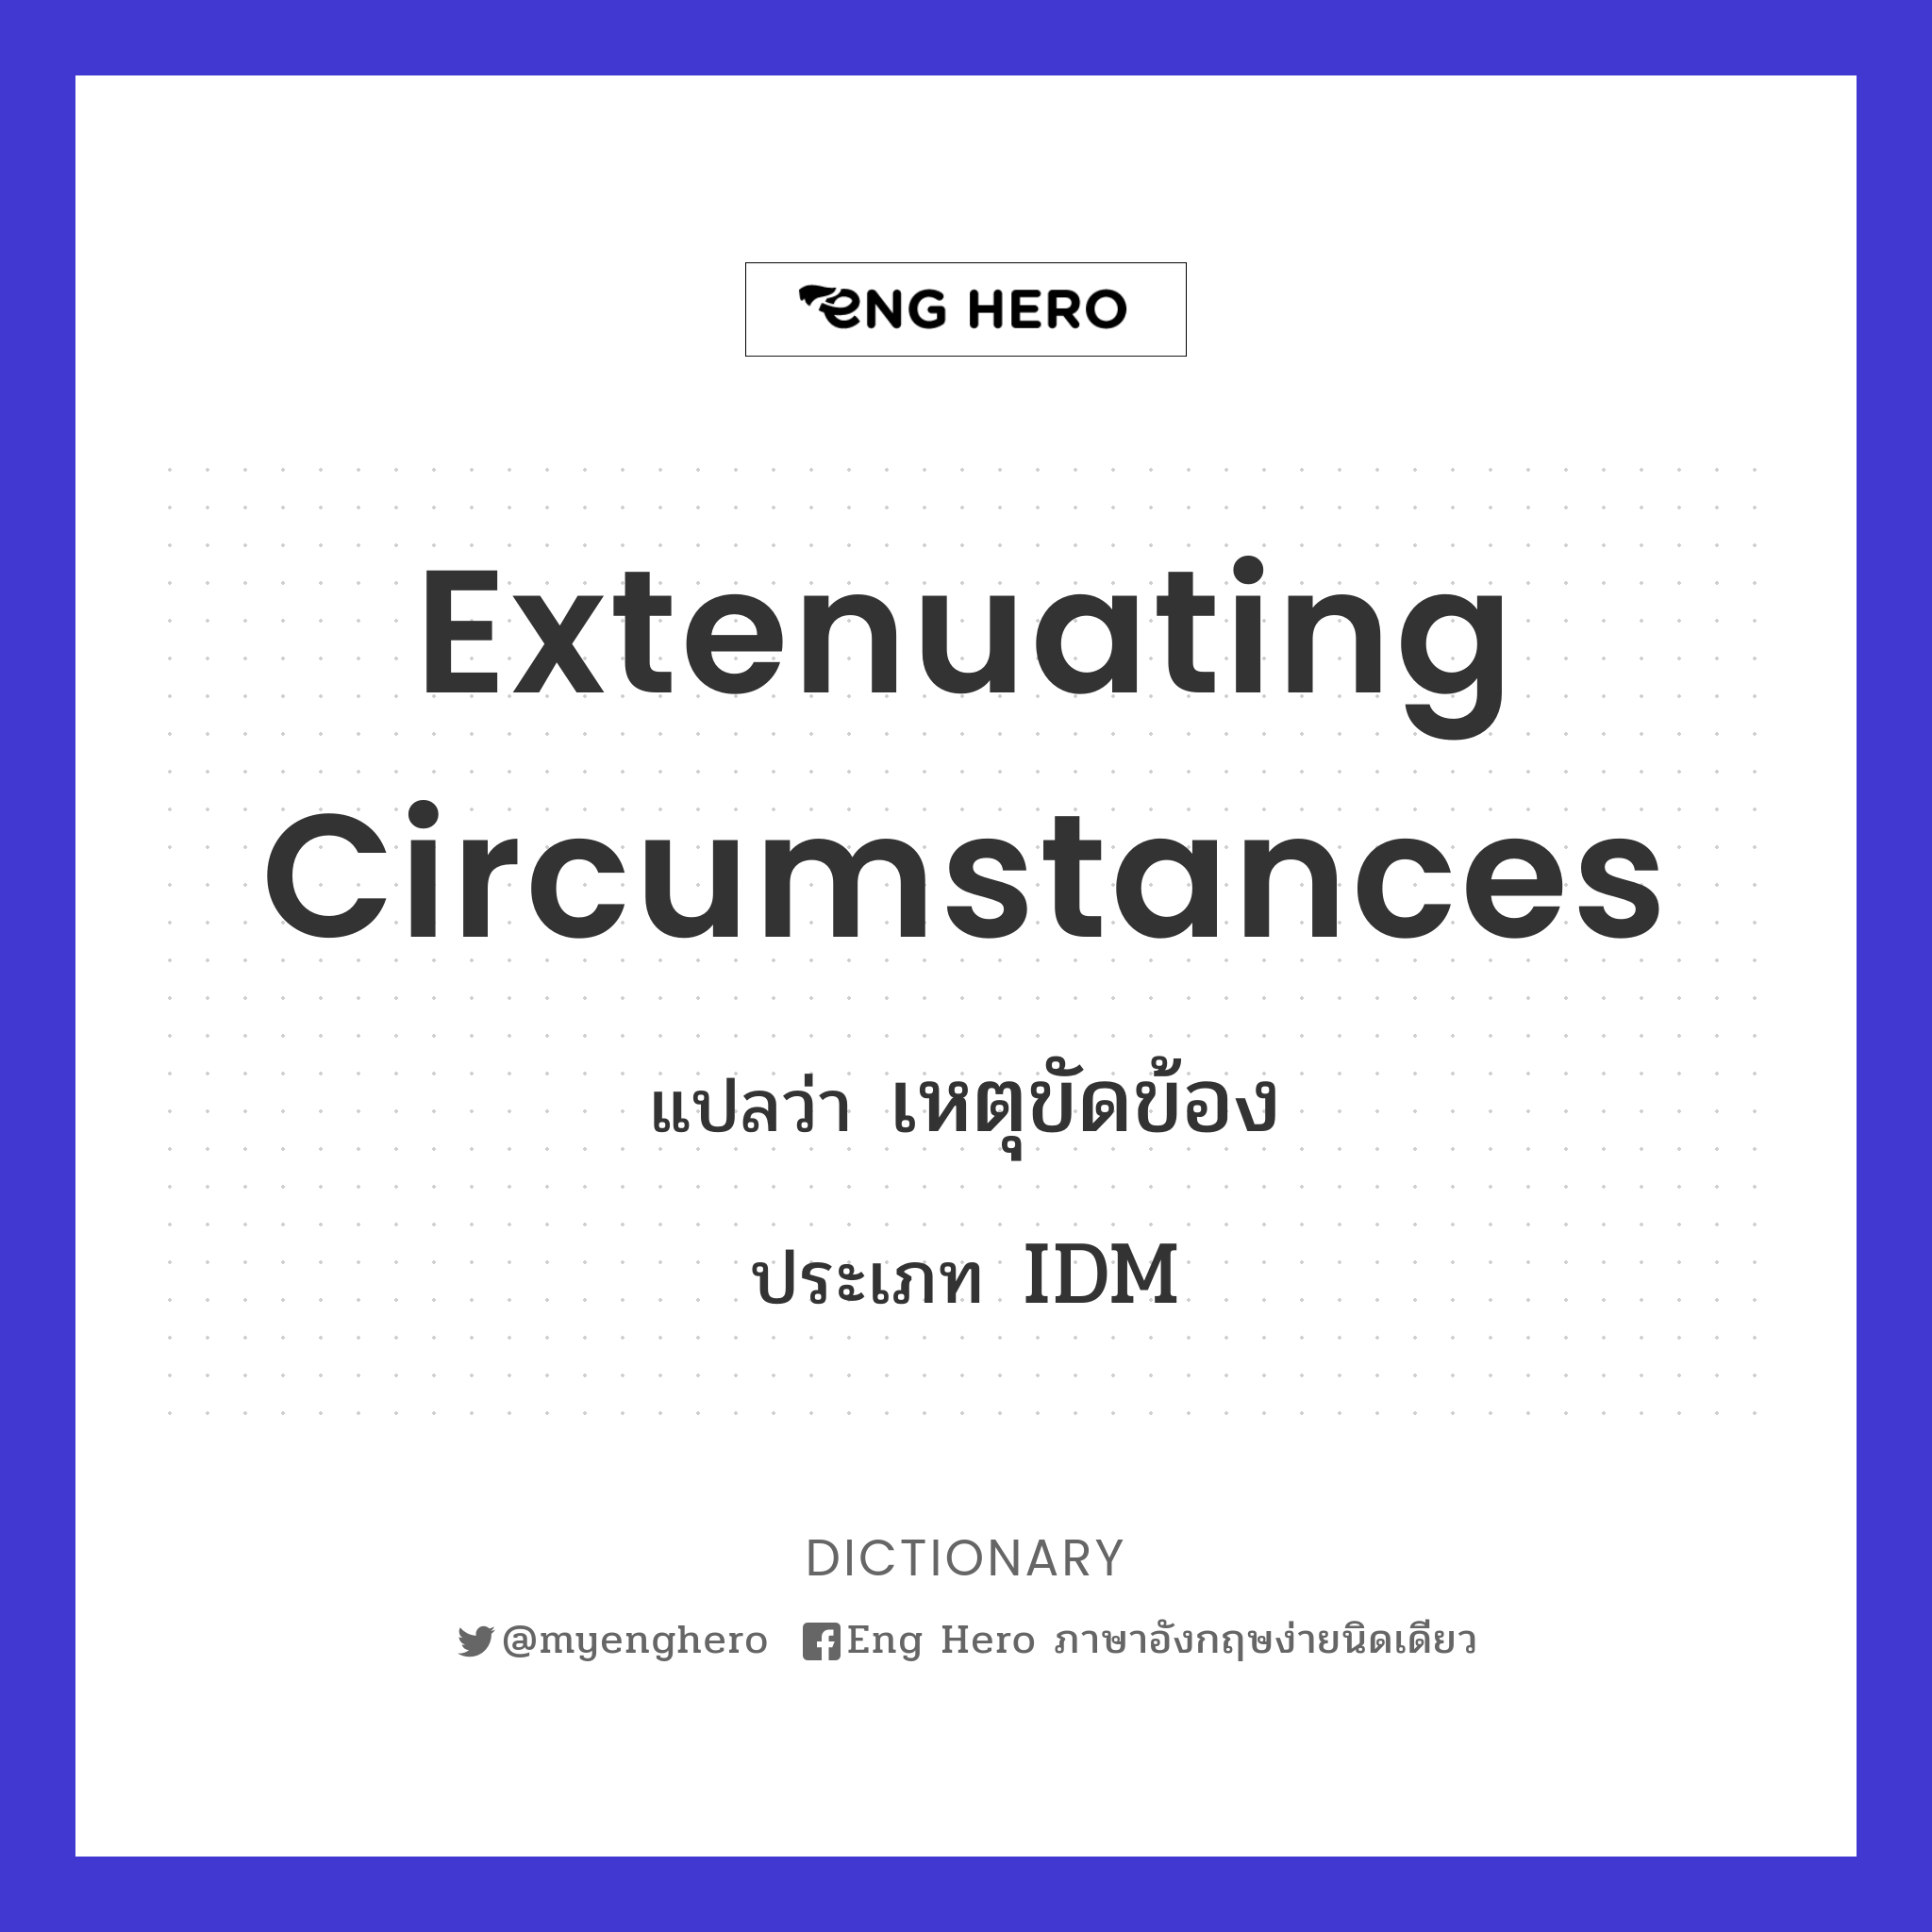 extenuating circumstances